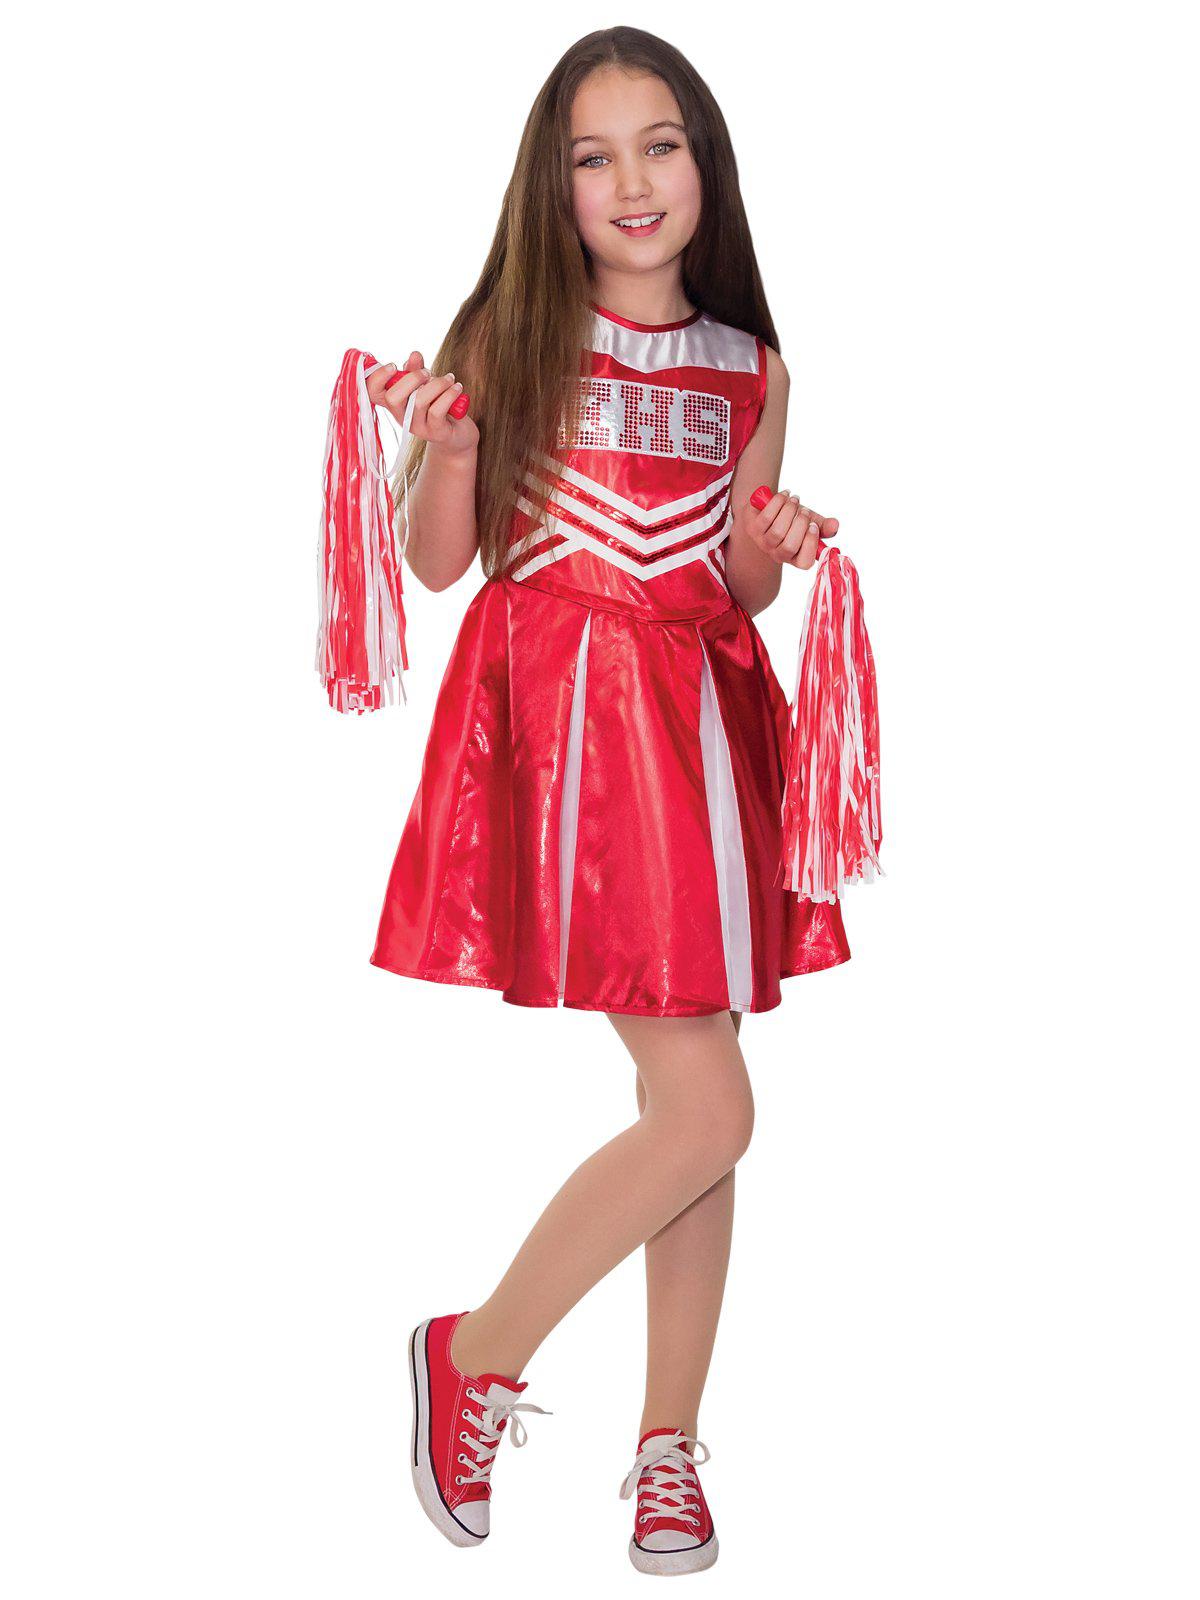 Wildcat Cheerleader High School Musical Costume Kids